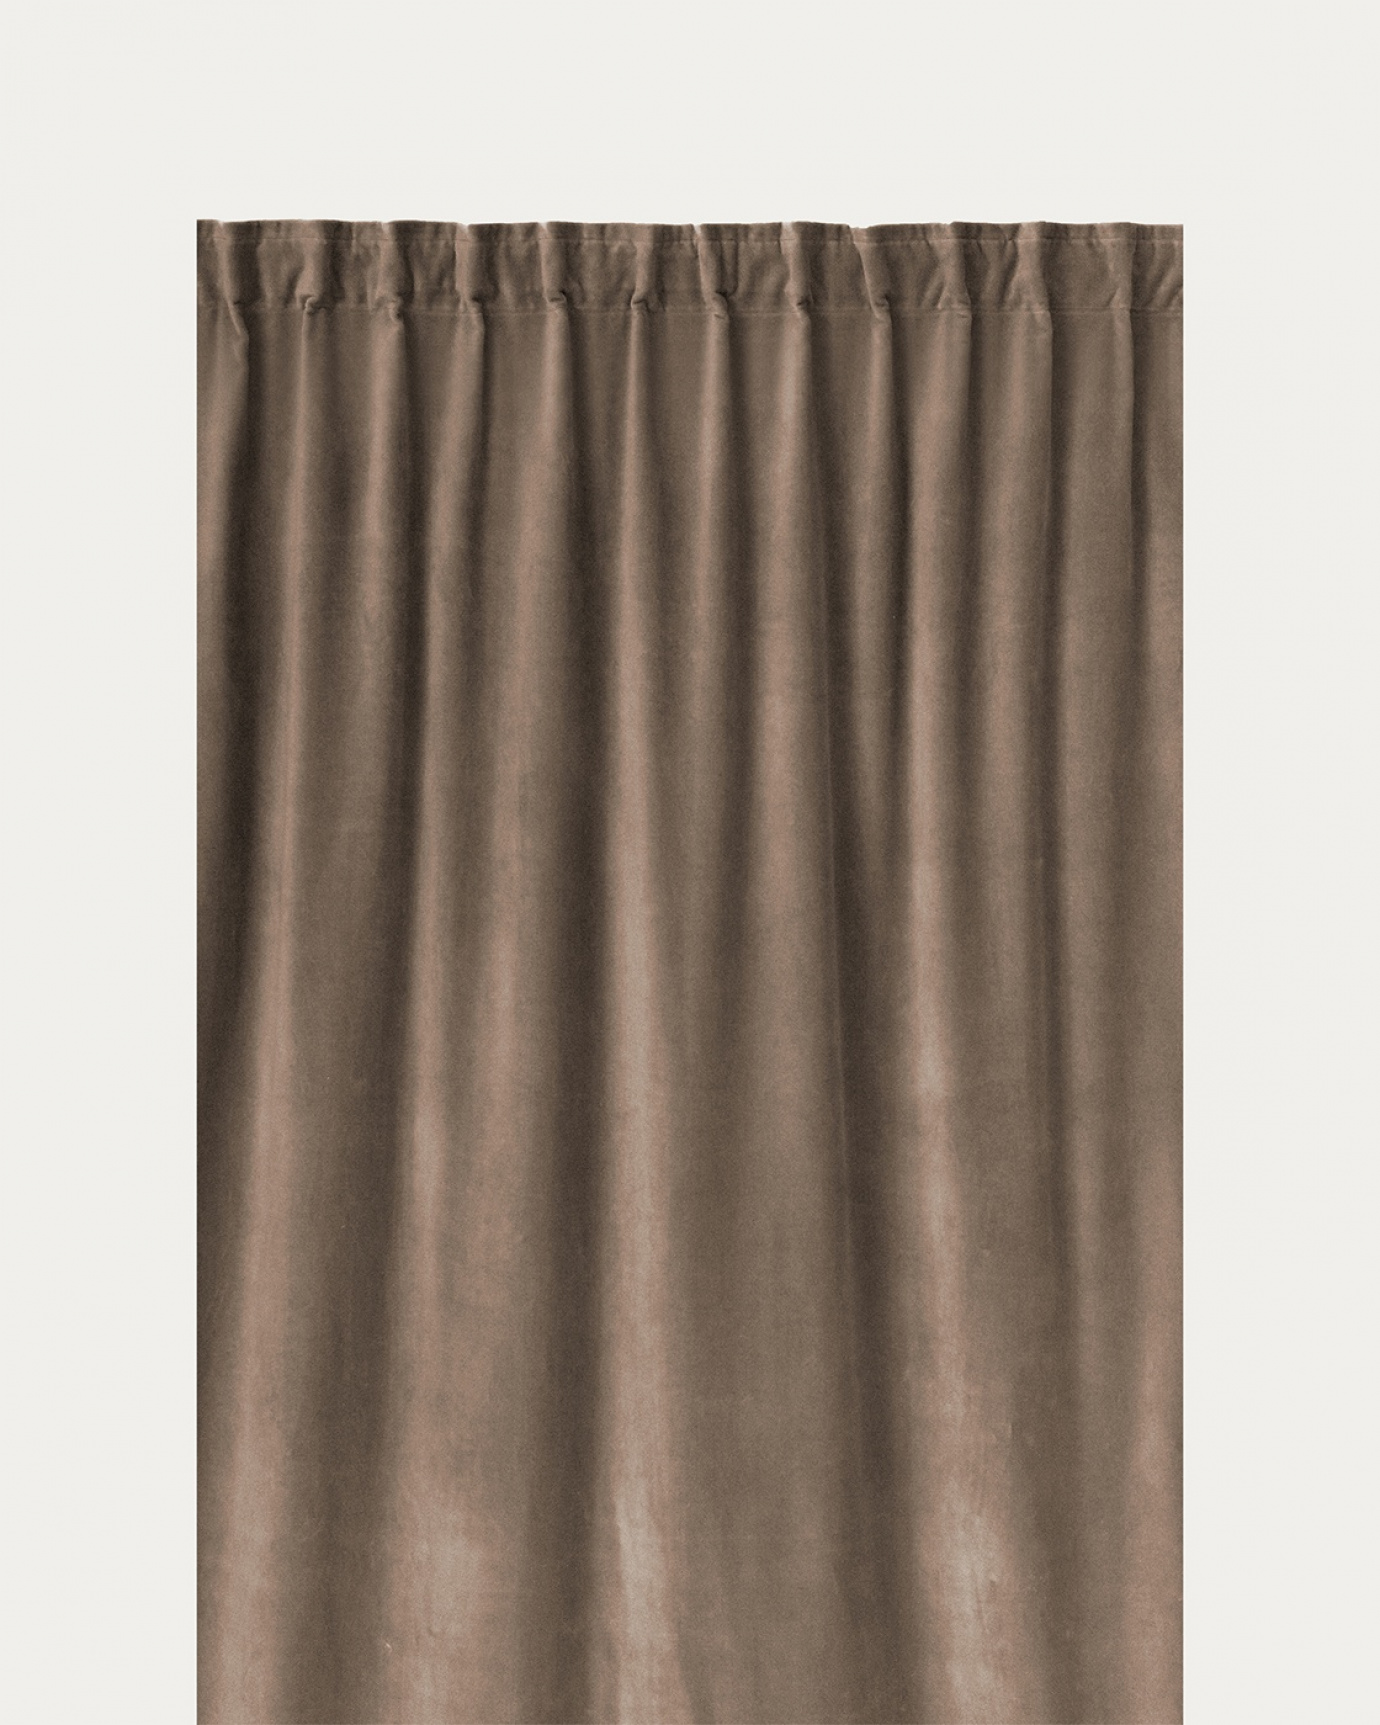 Immagine prodotto marrone talpa PAOLO tenda panna in velluto di cotone con nastro plissettato rifinito di LINUM DESIGN. Dimensioni 135x290 cm e venduto in 2-pezzi.